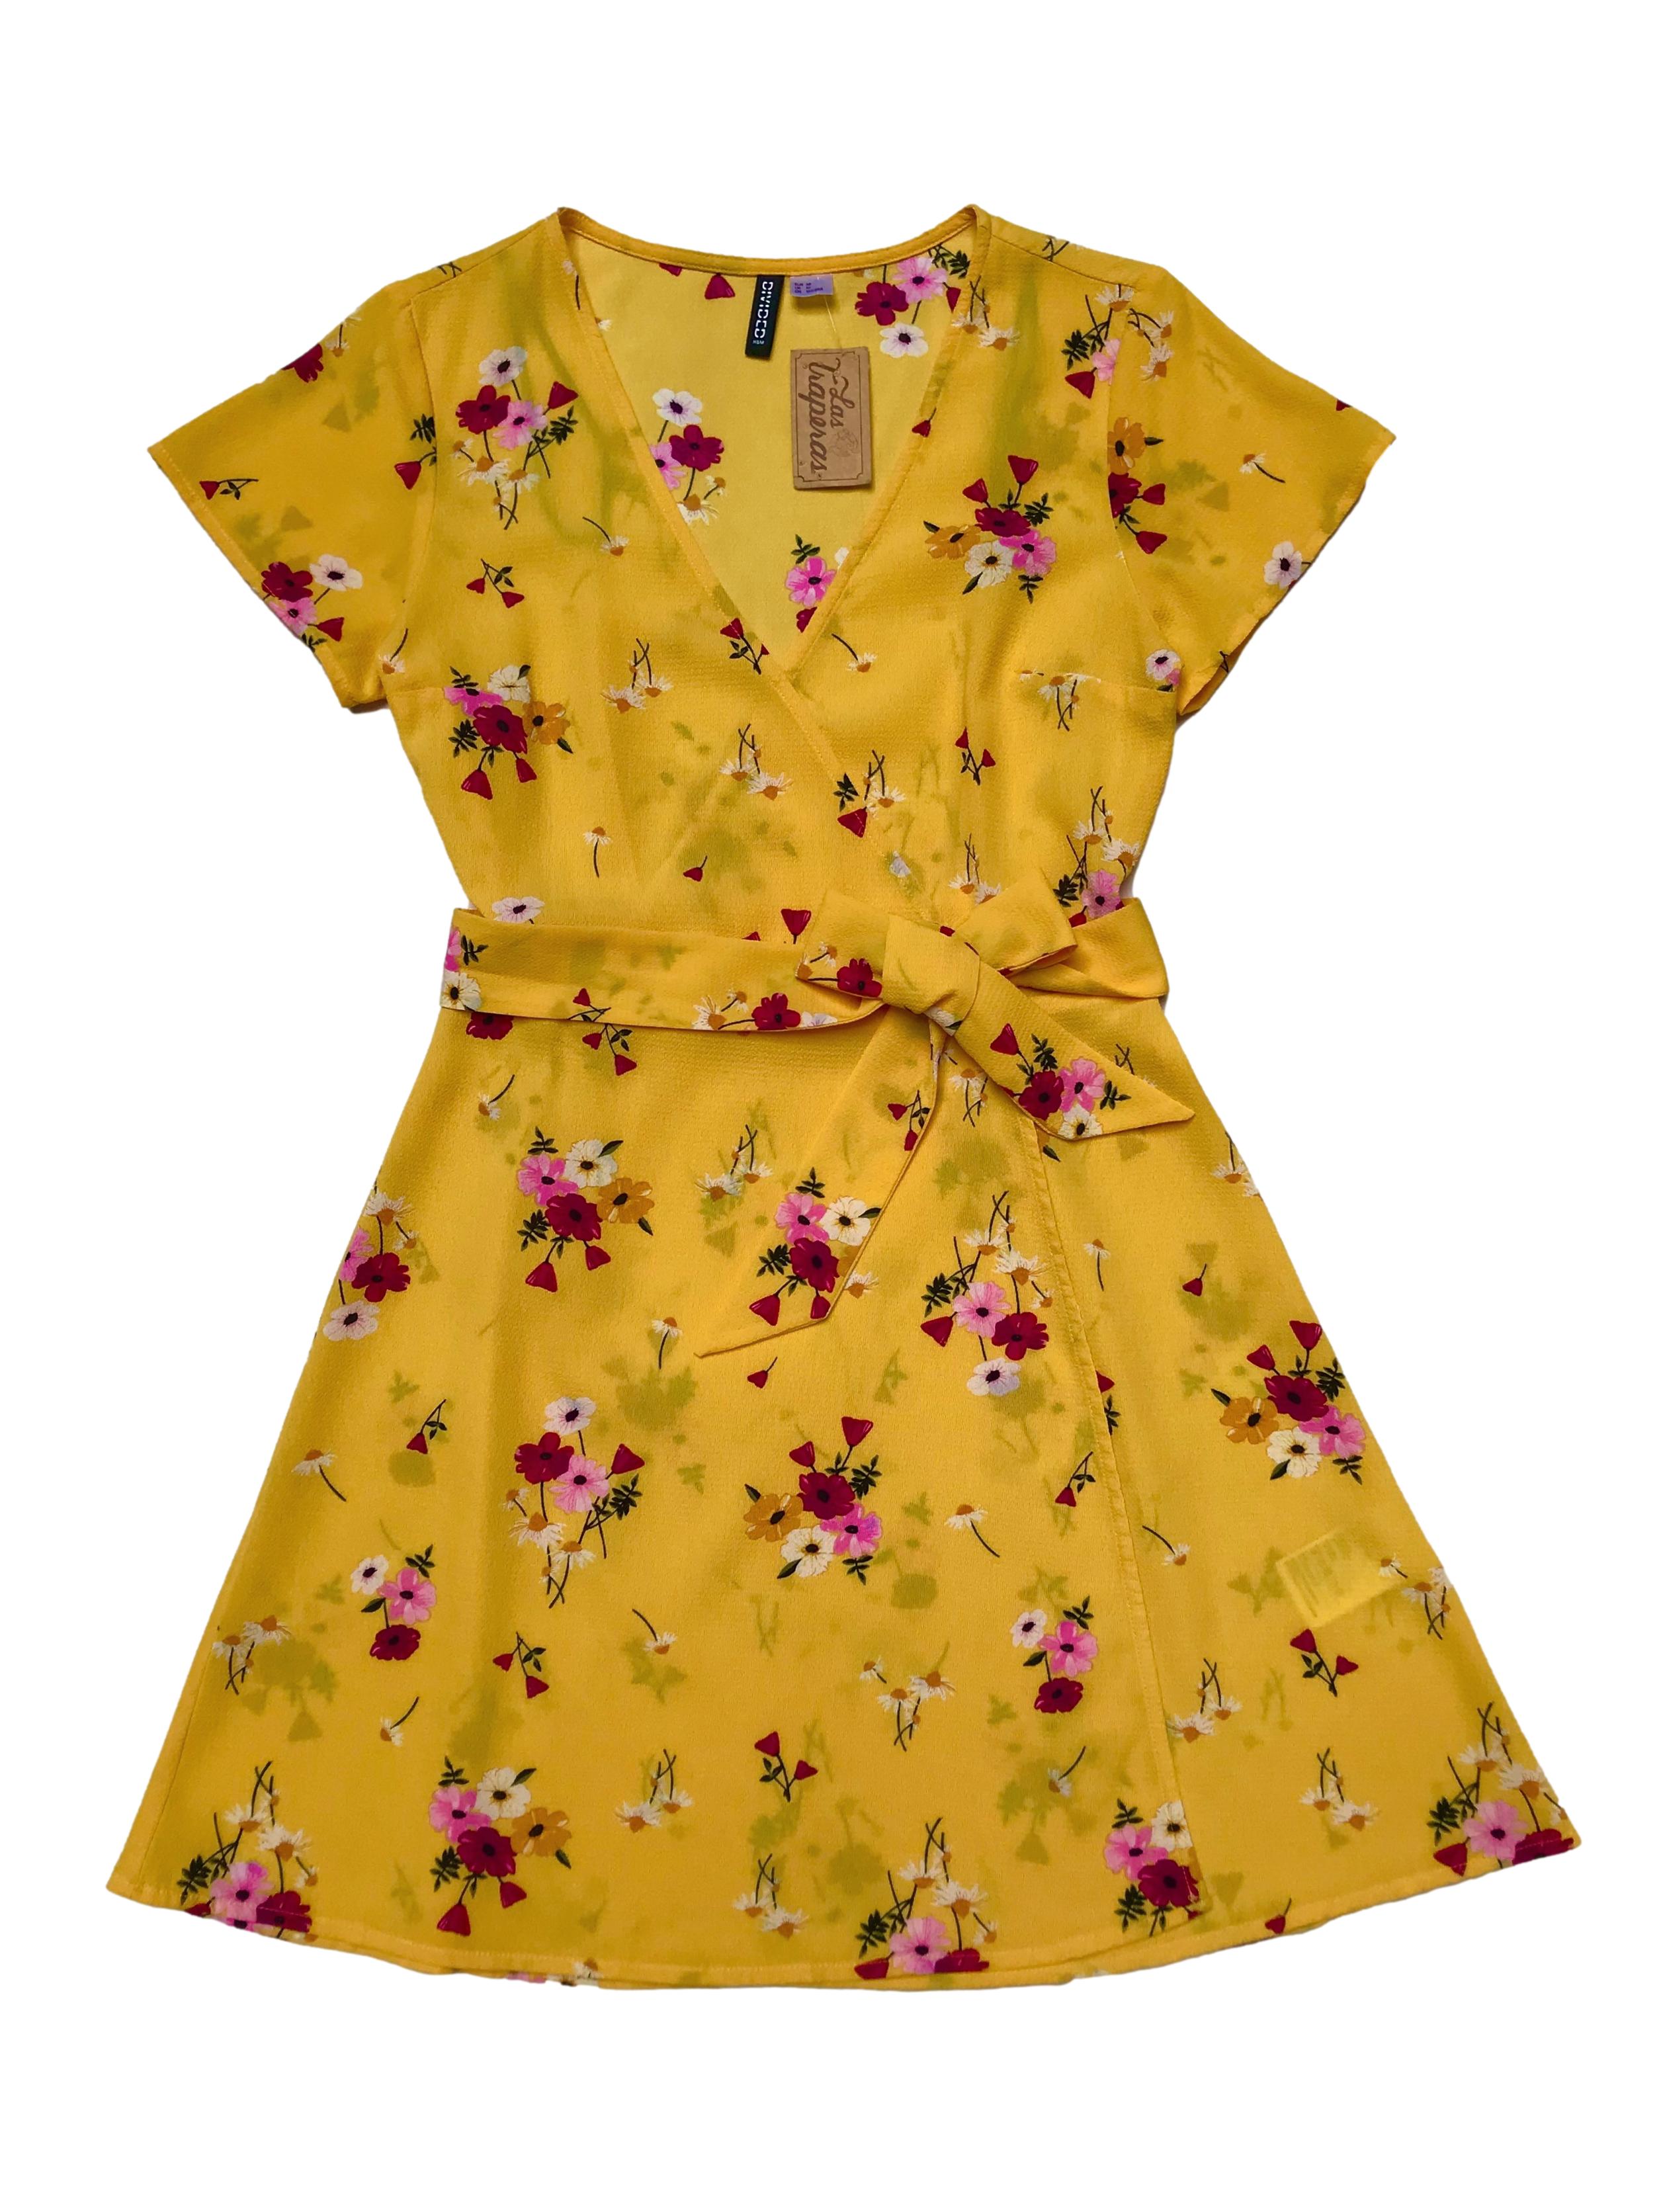 Vestido H&M de crepé amarillo con estampado de flores, modelo cruzado con cinto para amarrar y falda en A. Busto 92cm Largo 85cm